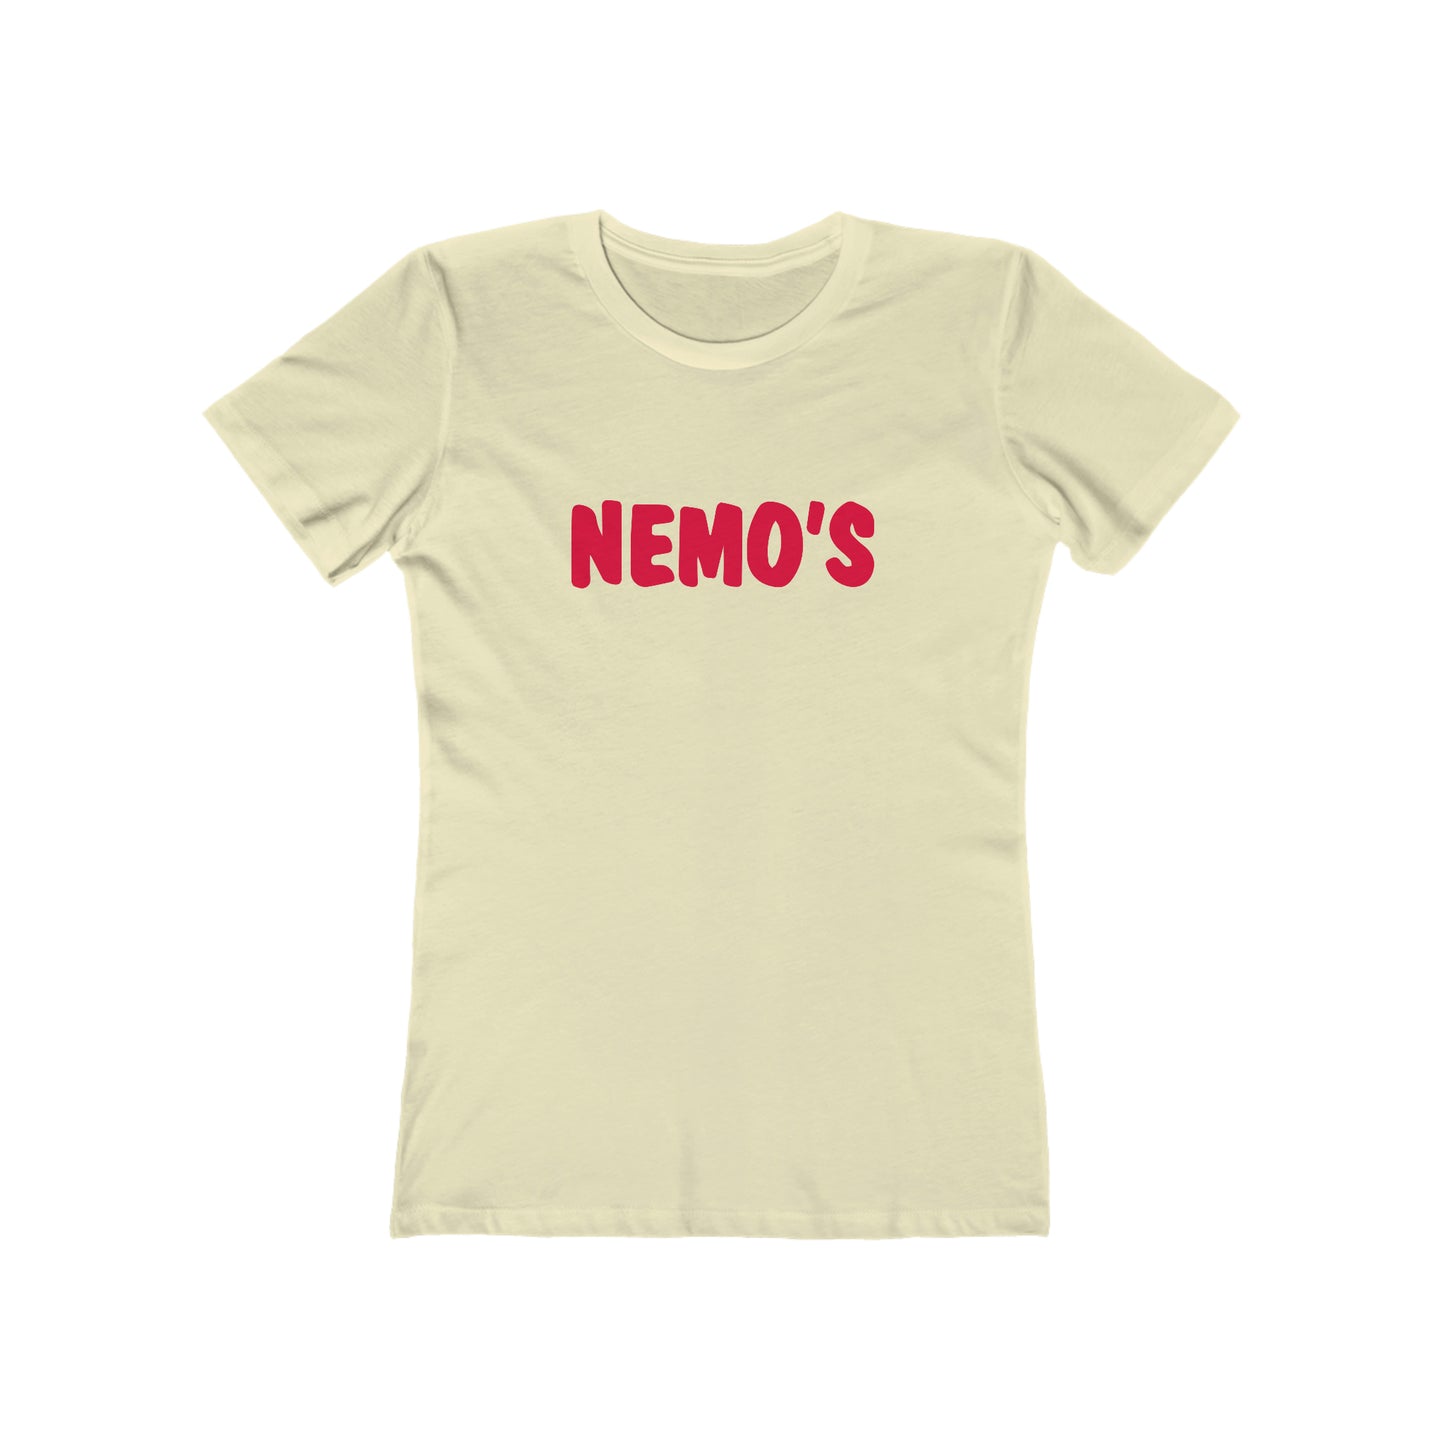 Nemo's - Women's T-Shirt